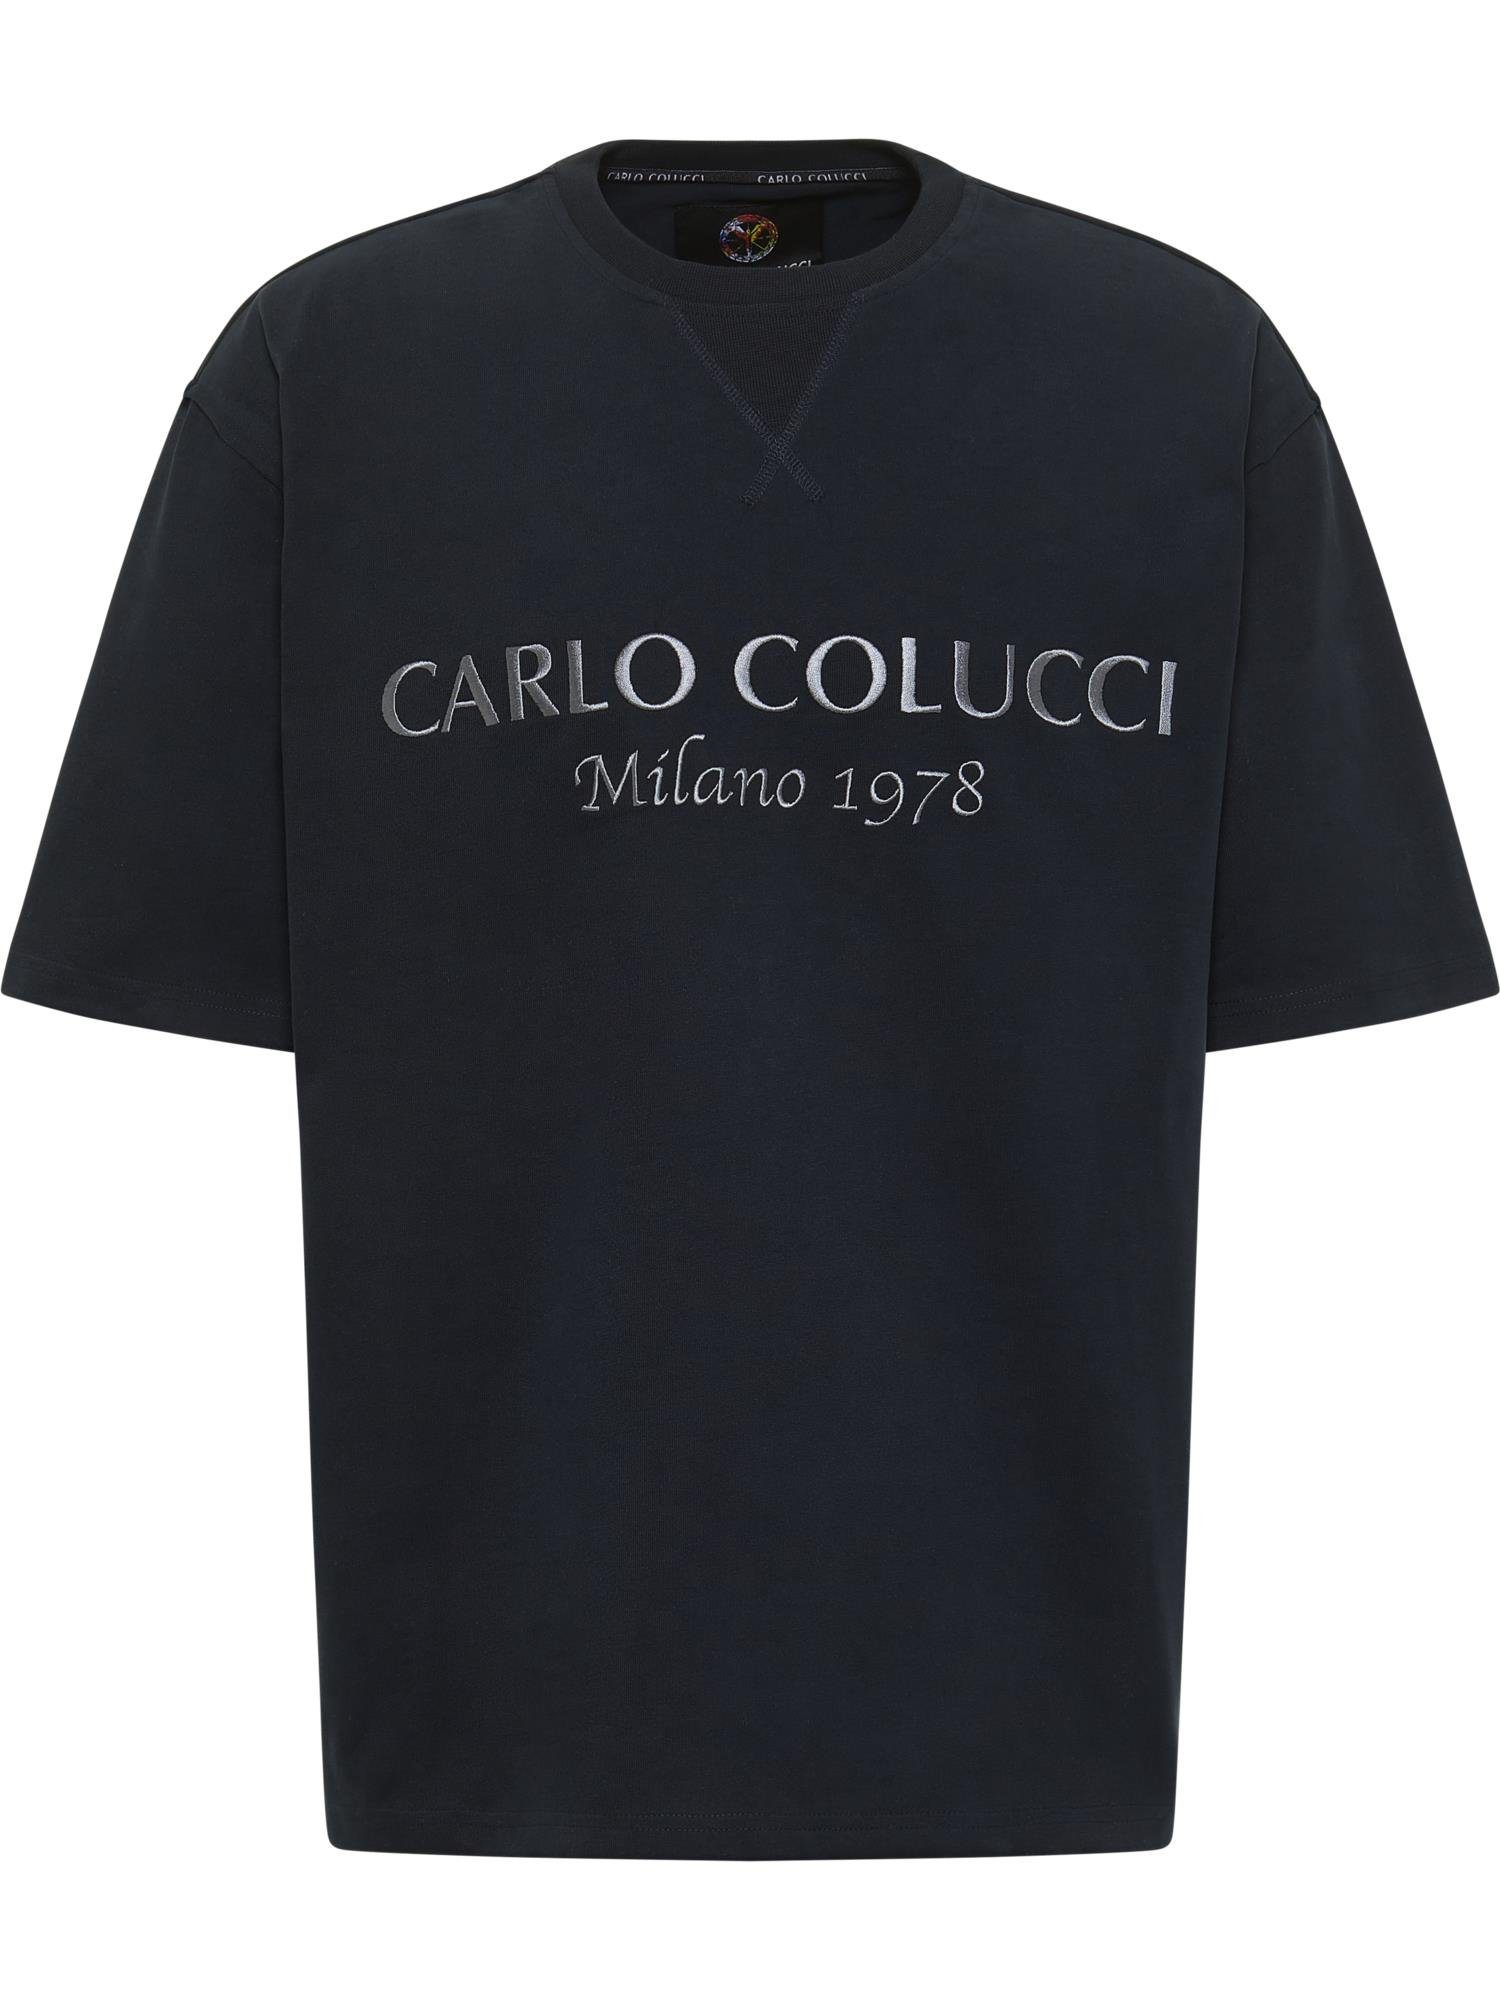 Caminada COLUCCI T-Shirt De Schwarz CARLO